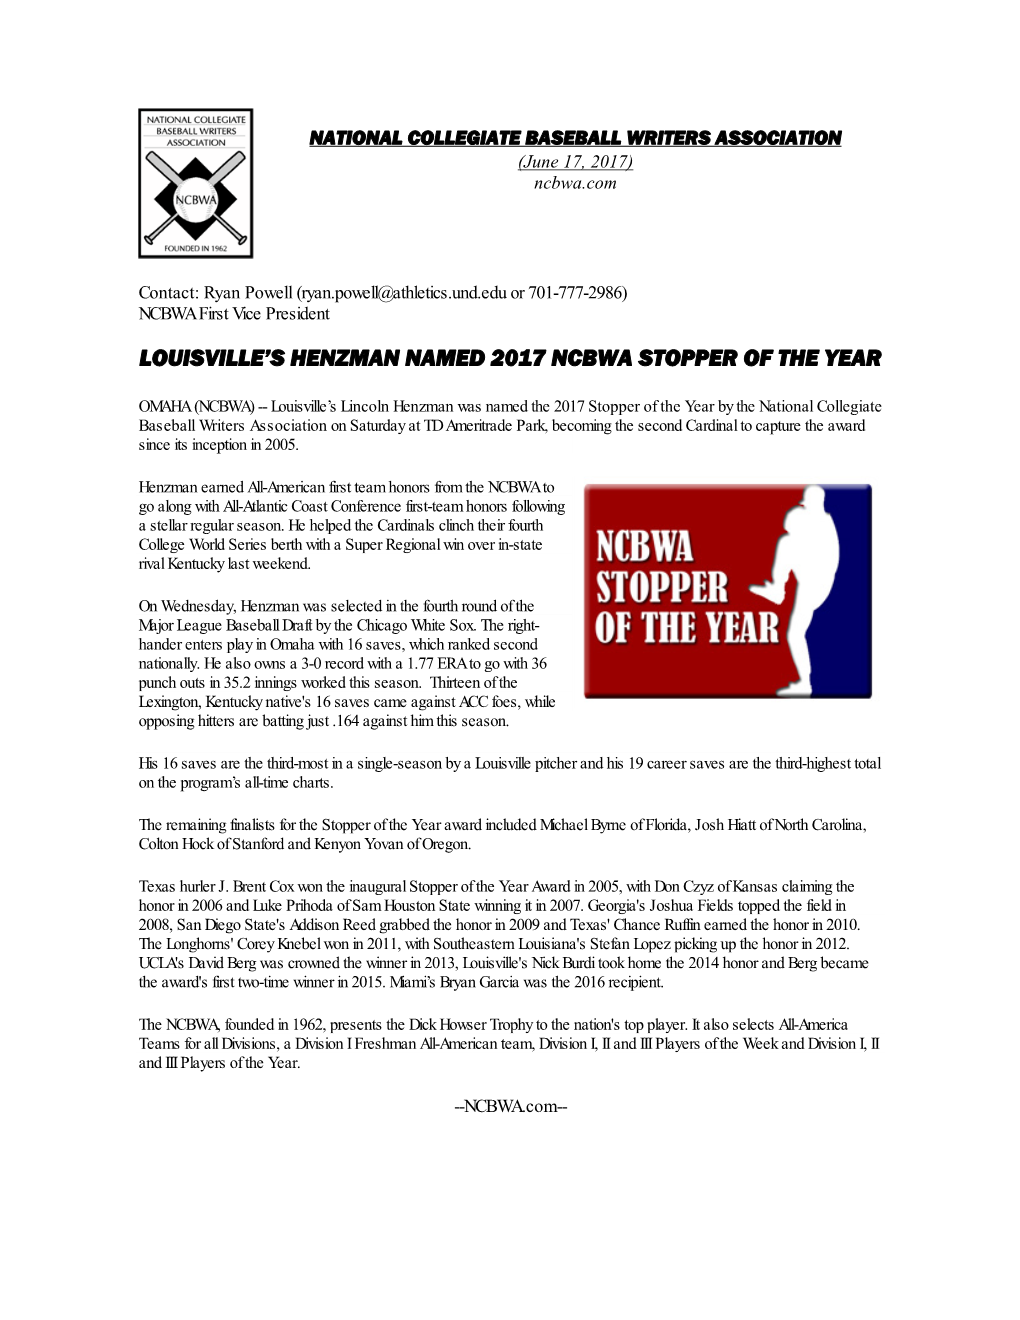 Louisville's Henzman Named 2017 Ncbwa Stopper of The